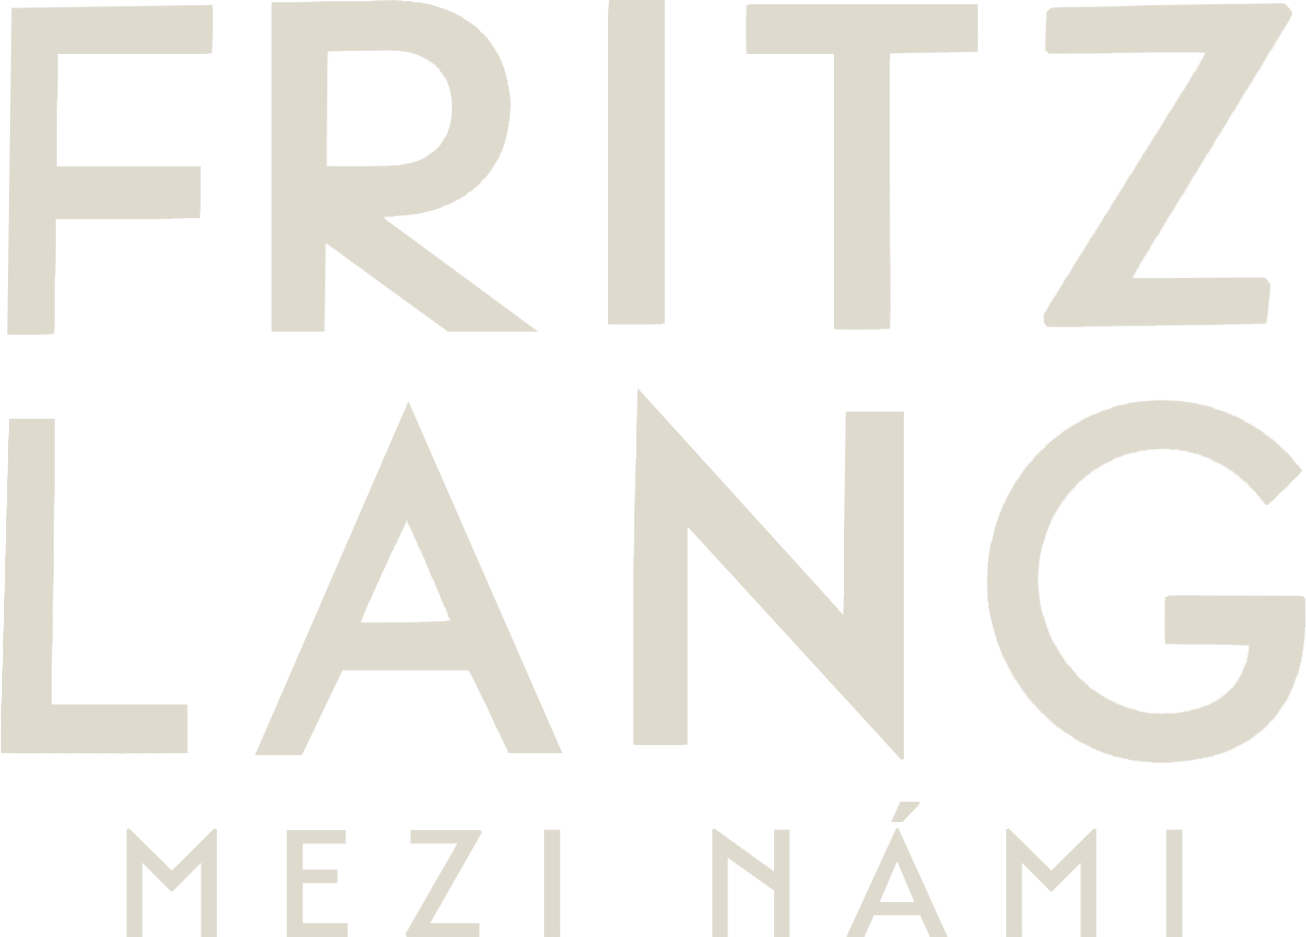 Fritz Lang mezi námi